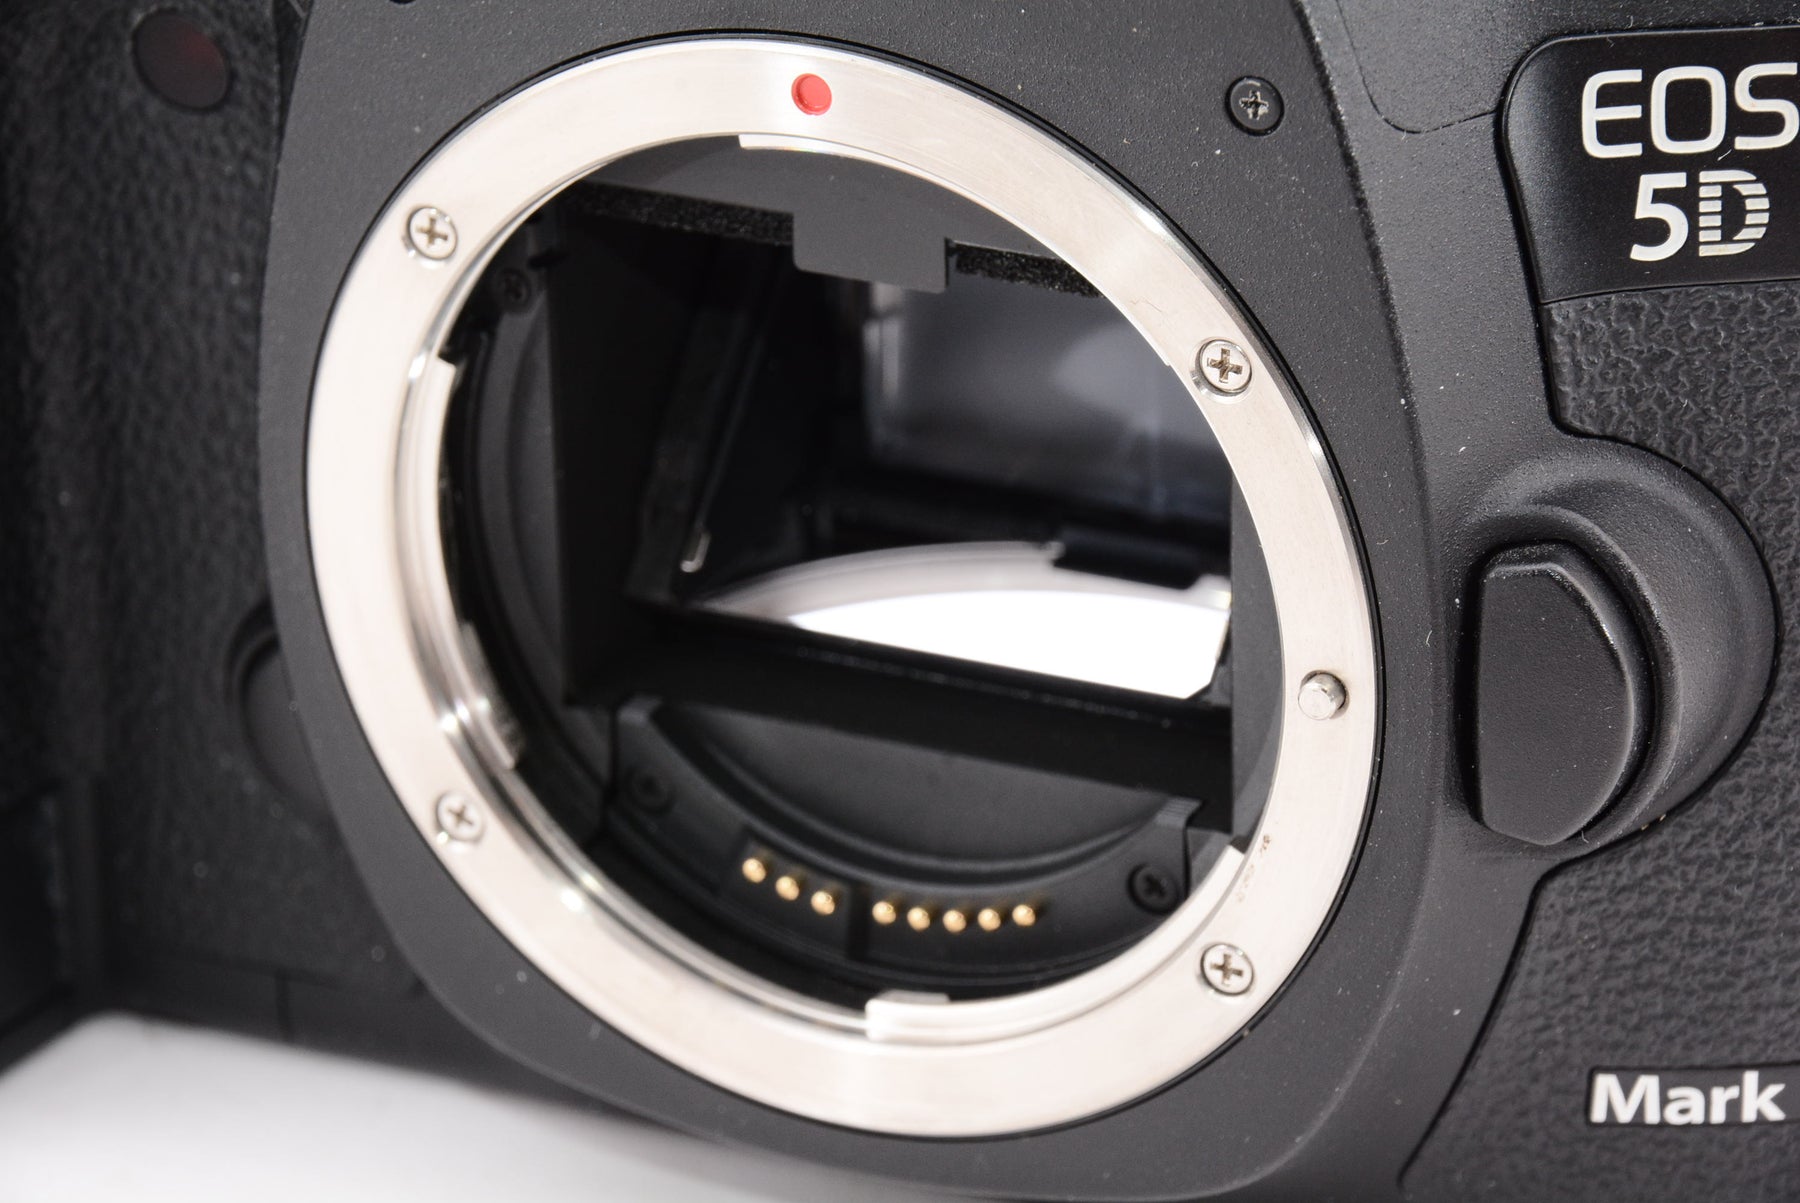 Canon デジタル一眼レフカメラ EOS 5D Mark III ボディ EOS5DMK3 - 3